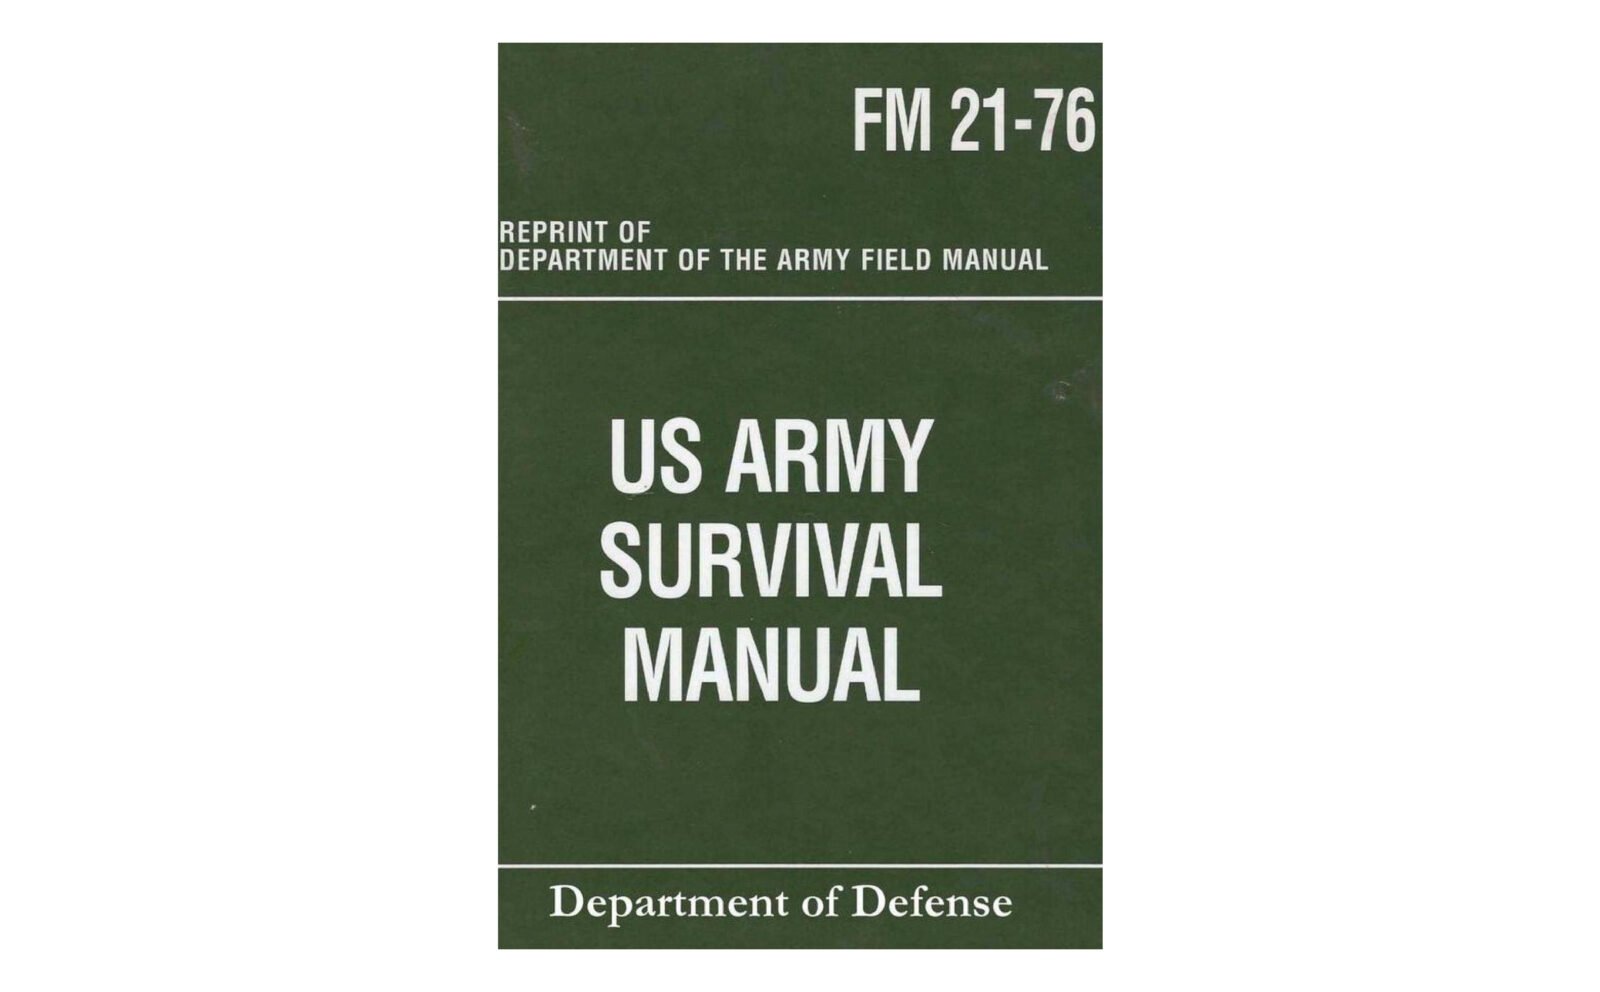 survival guide fm 21-76